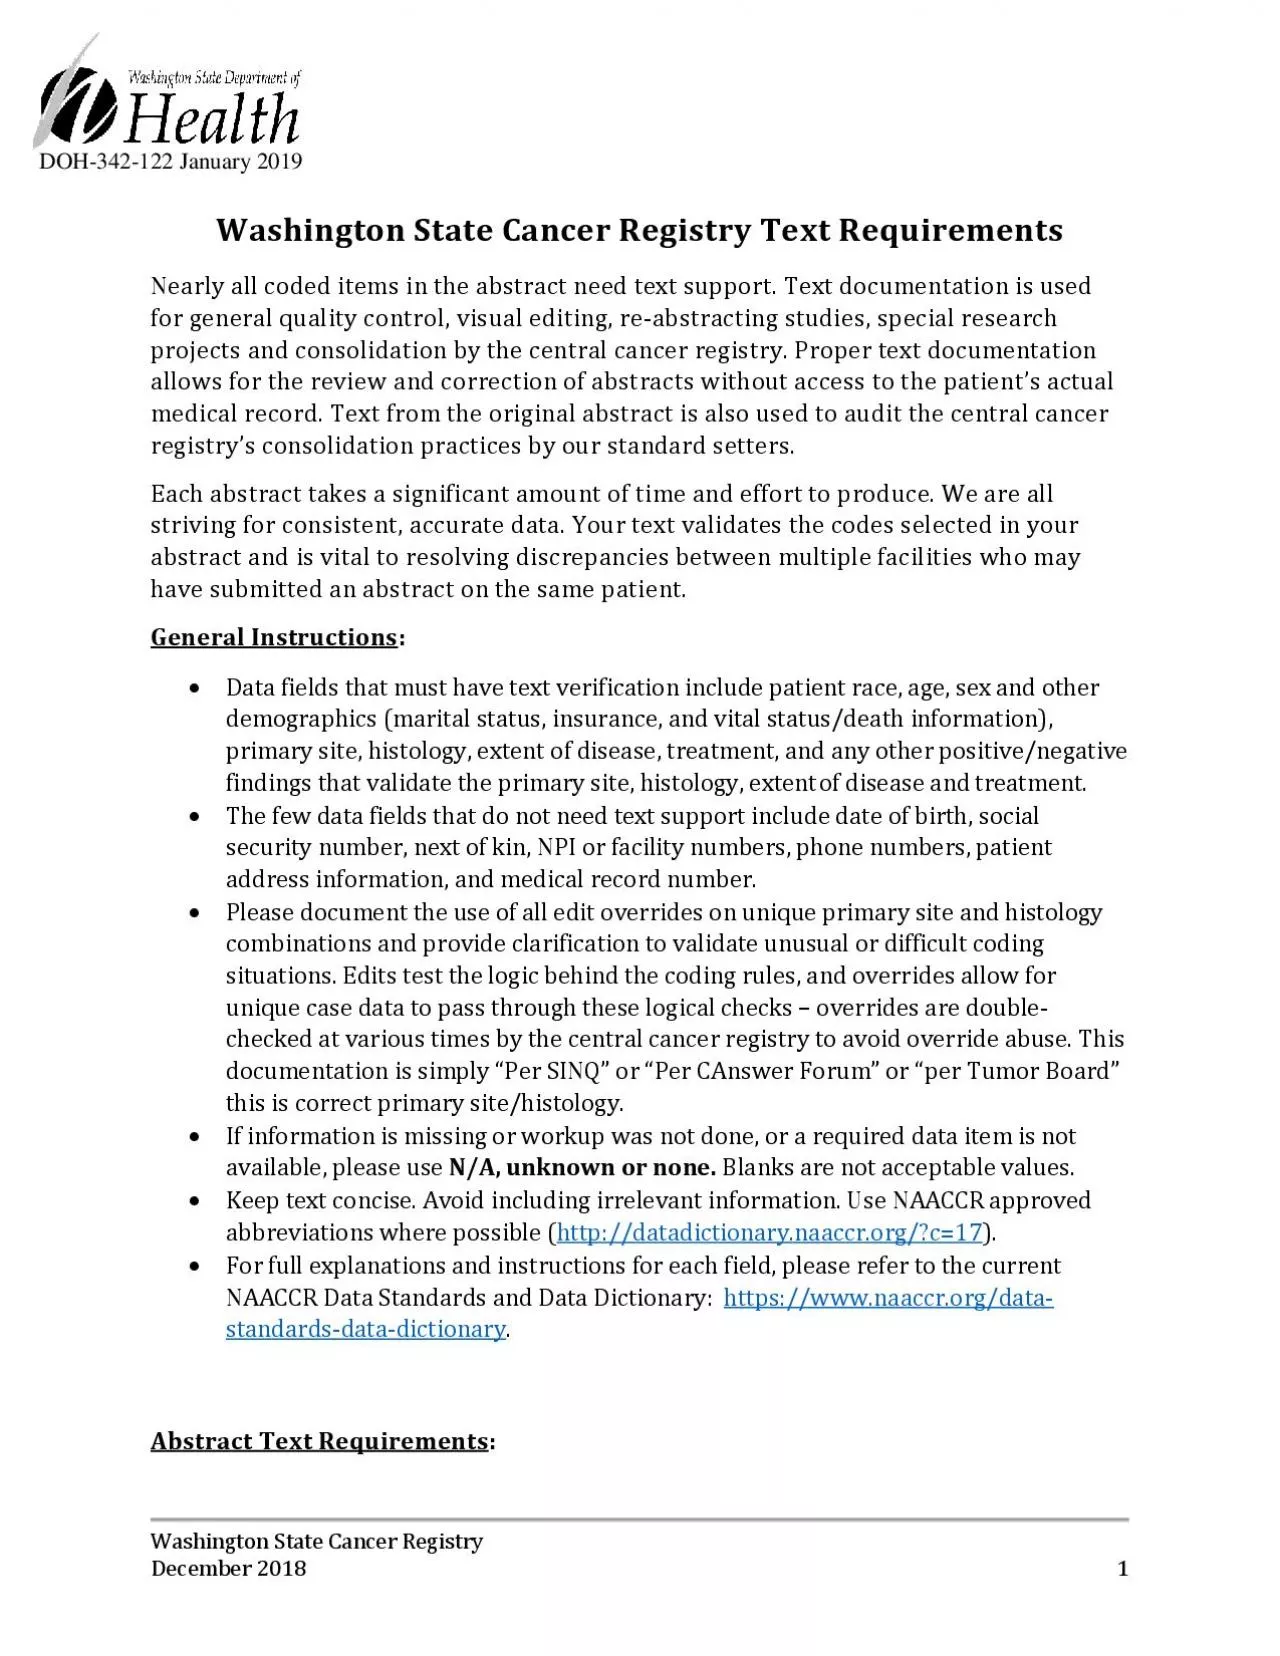 Washington State Cancer RegistryDecember 2018